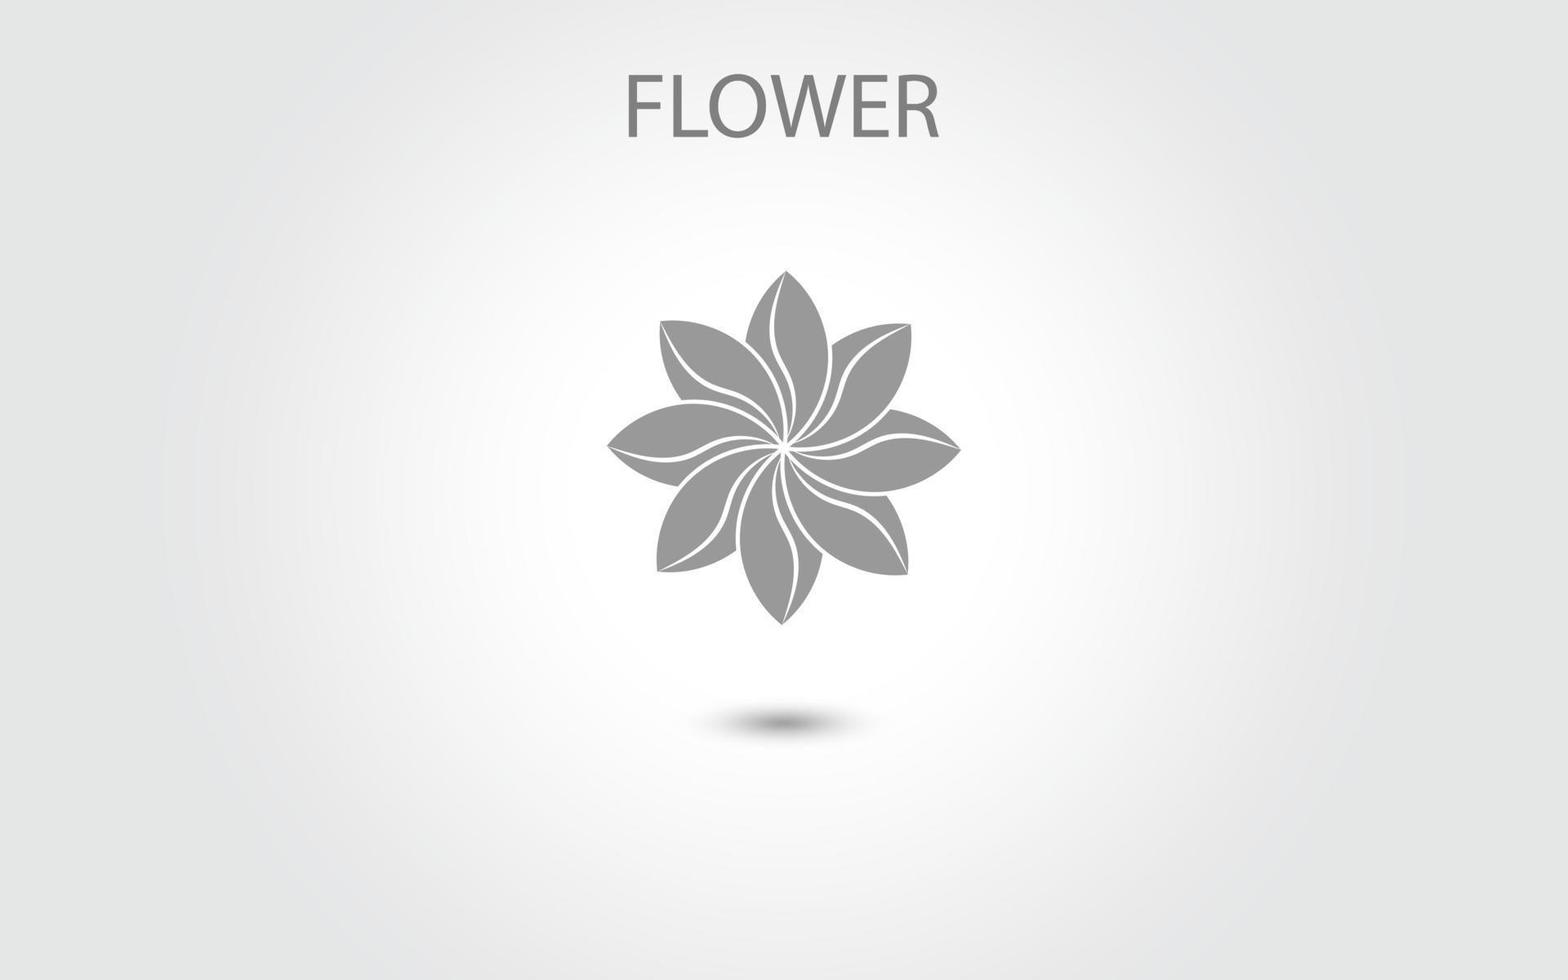 vetor de ícone de flor isolado no fundo branco, ilustração de ícone de flor desenhada à mão, modelo de logotipo floral, ícone natural de símbolo